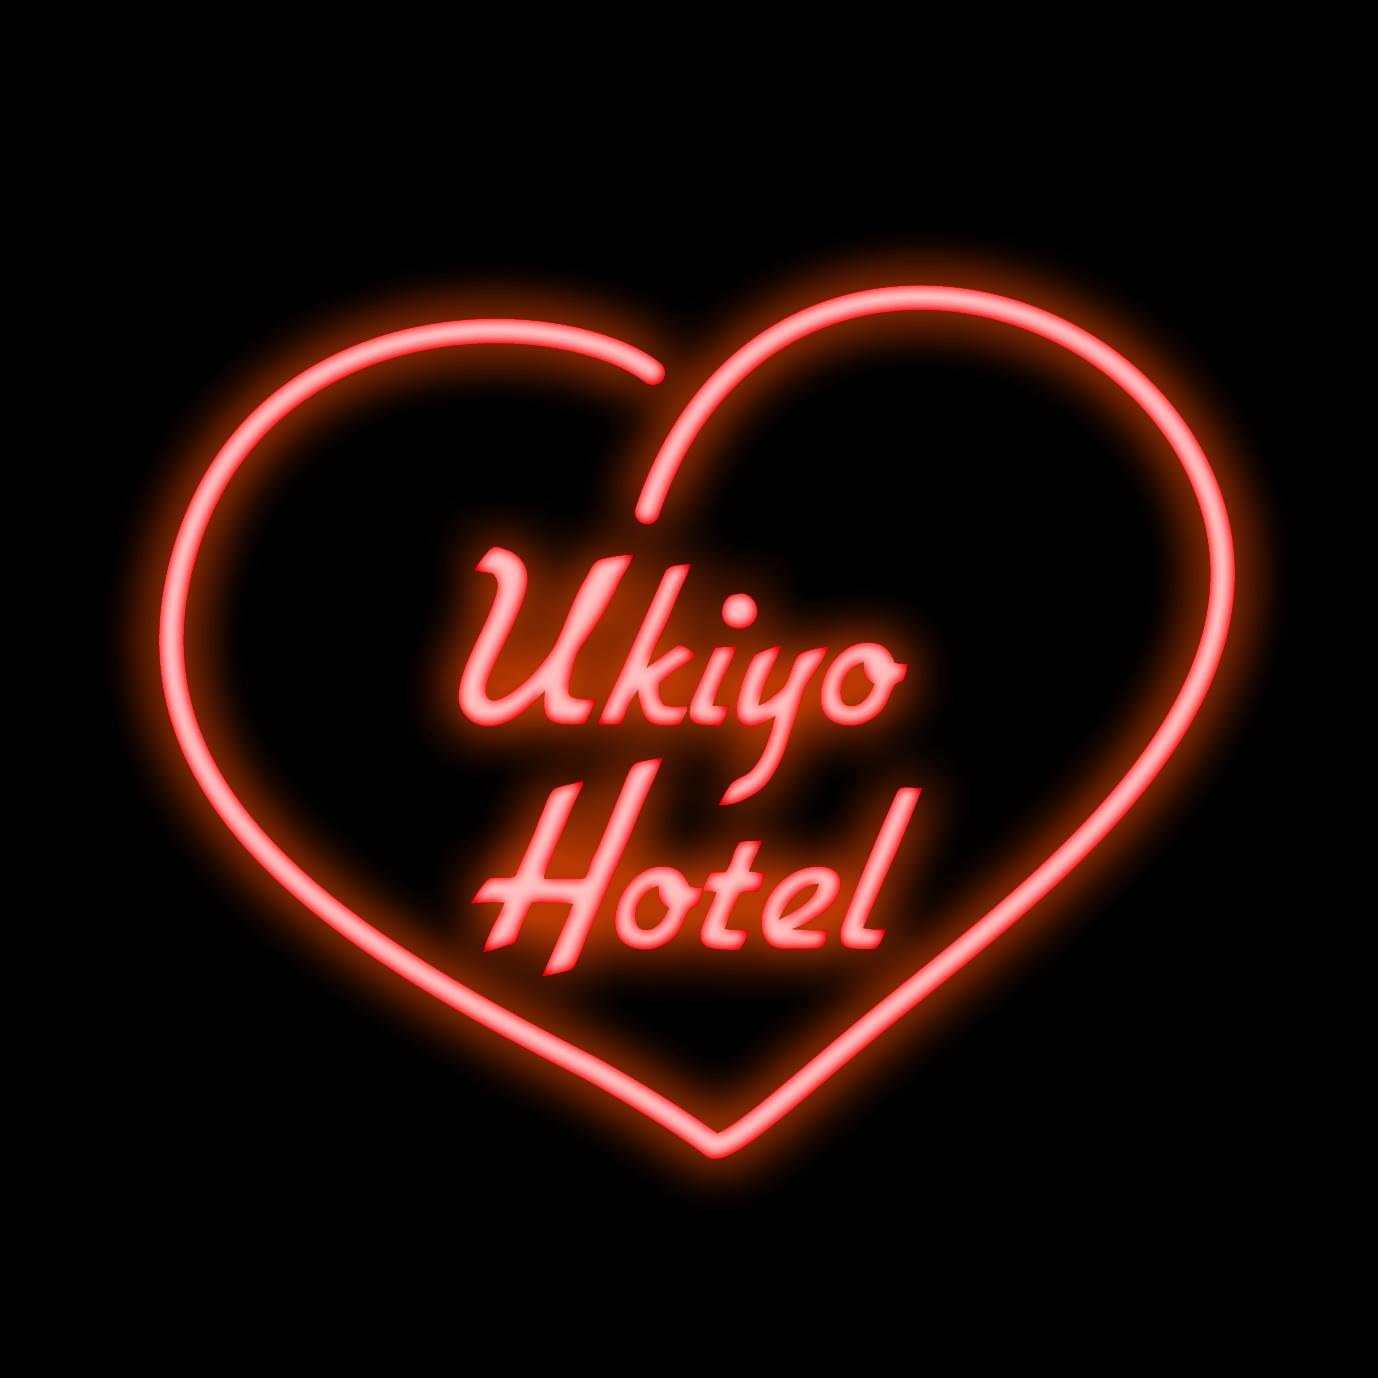 Ukiyo Hotel Project